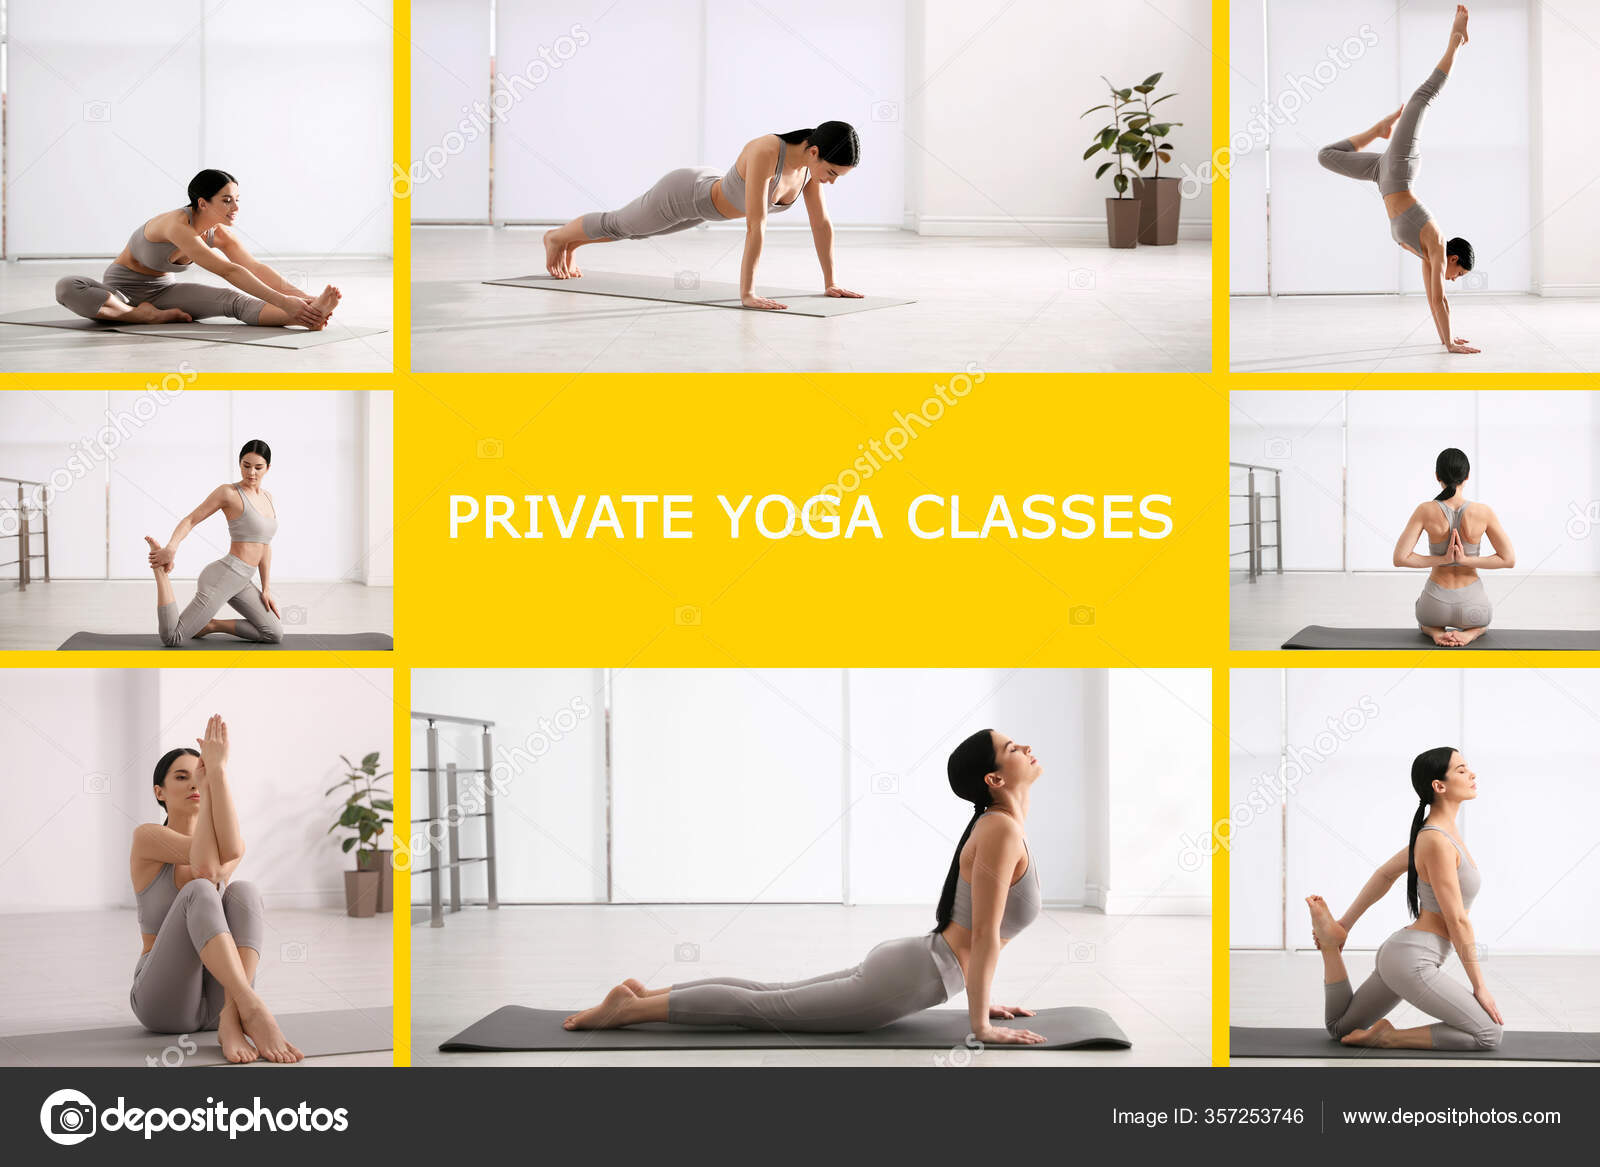 Private yoga